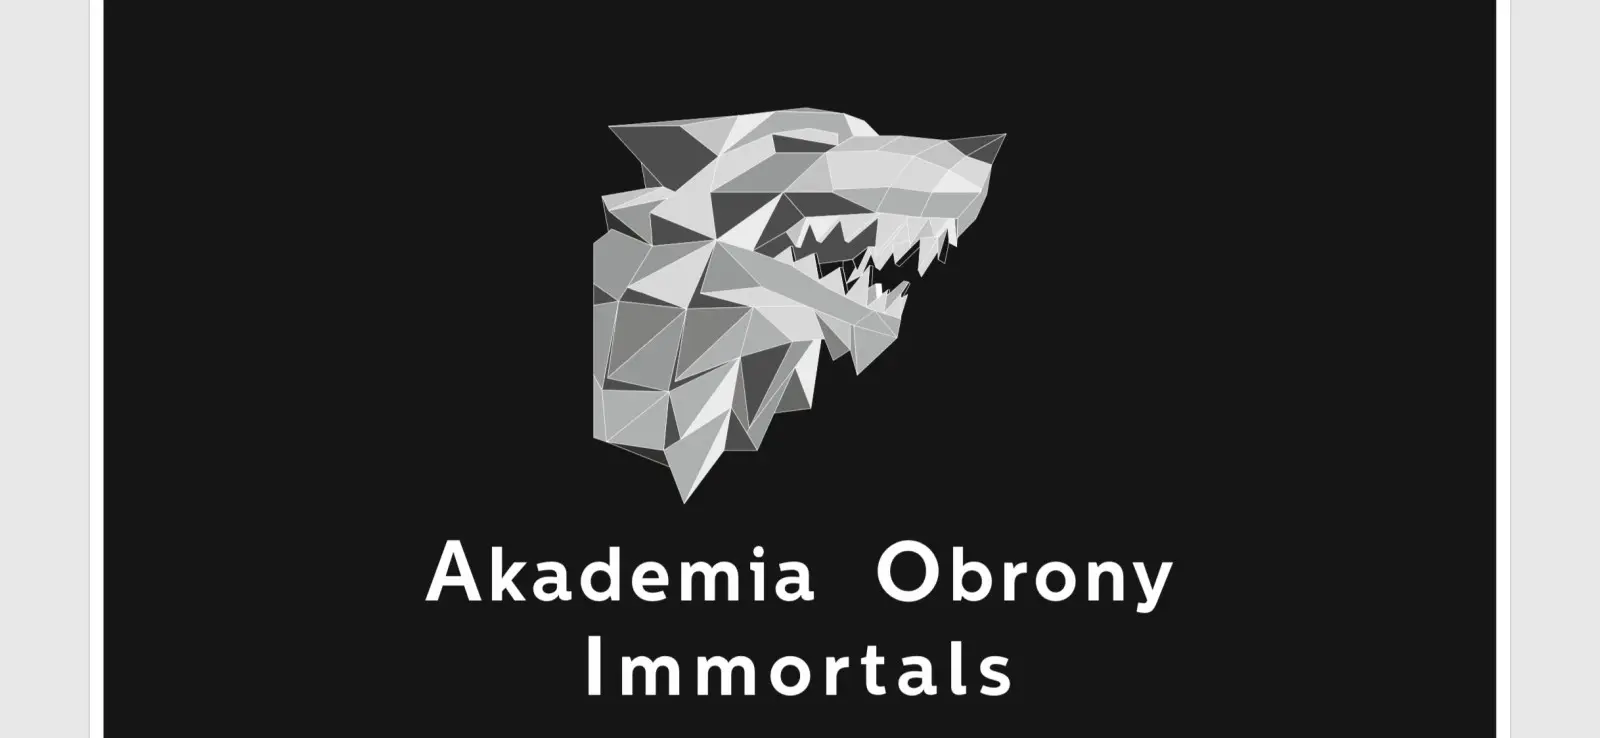 Akademia Obrony Immortals